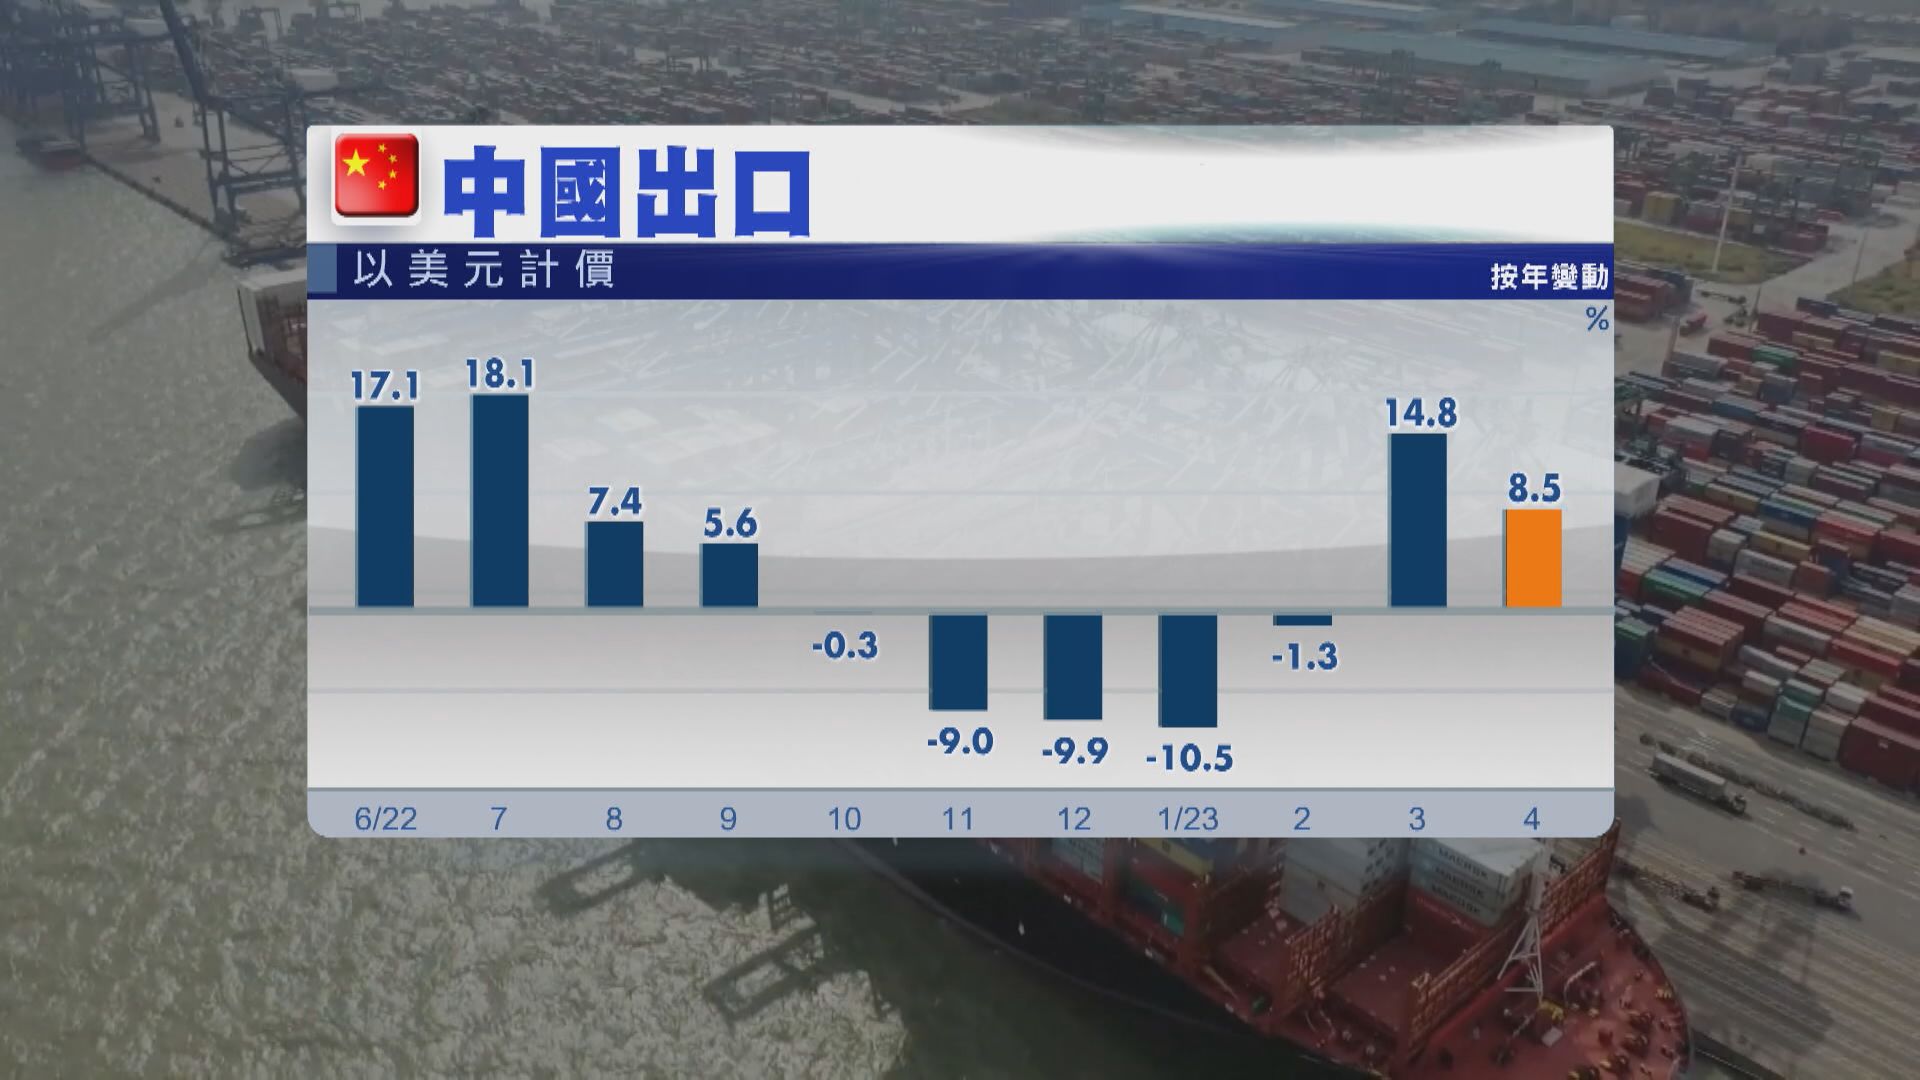 【外貿向好】中國4月出口升8.5% 進口跌幅3個月最大